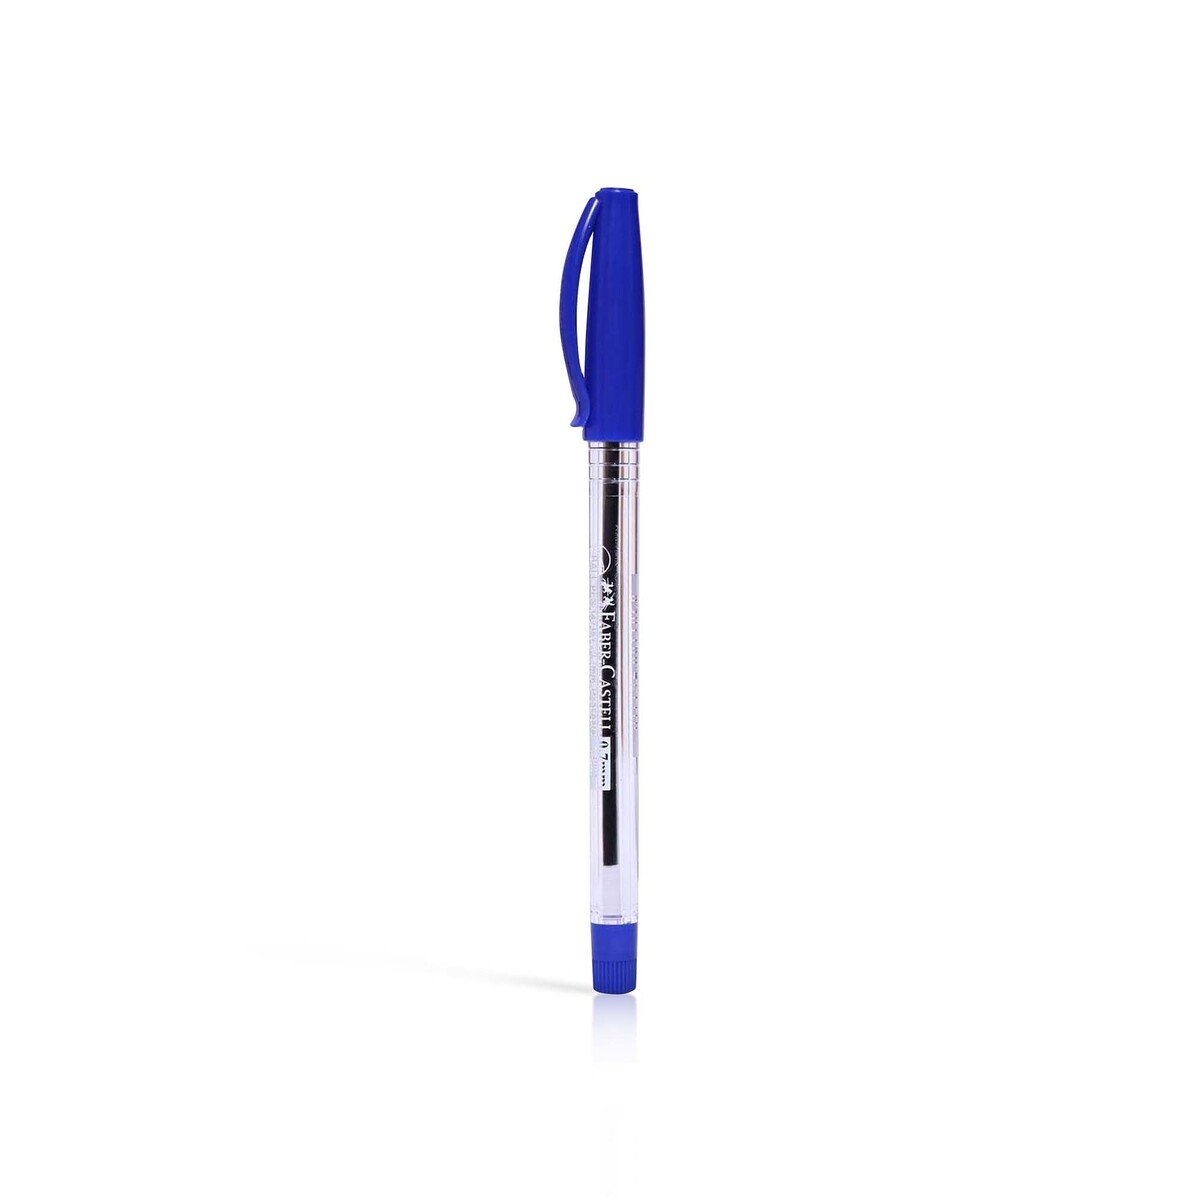 Faber-Castell Ball Pen With Jar 30pcs FCIN1423